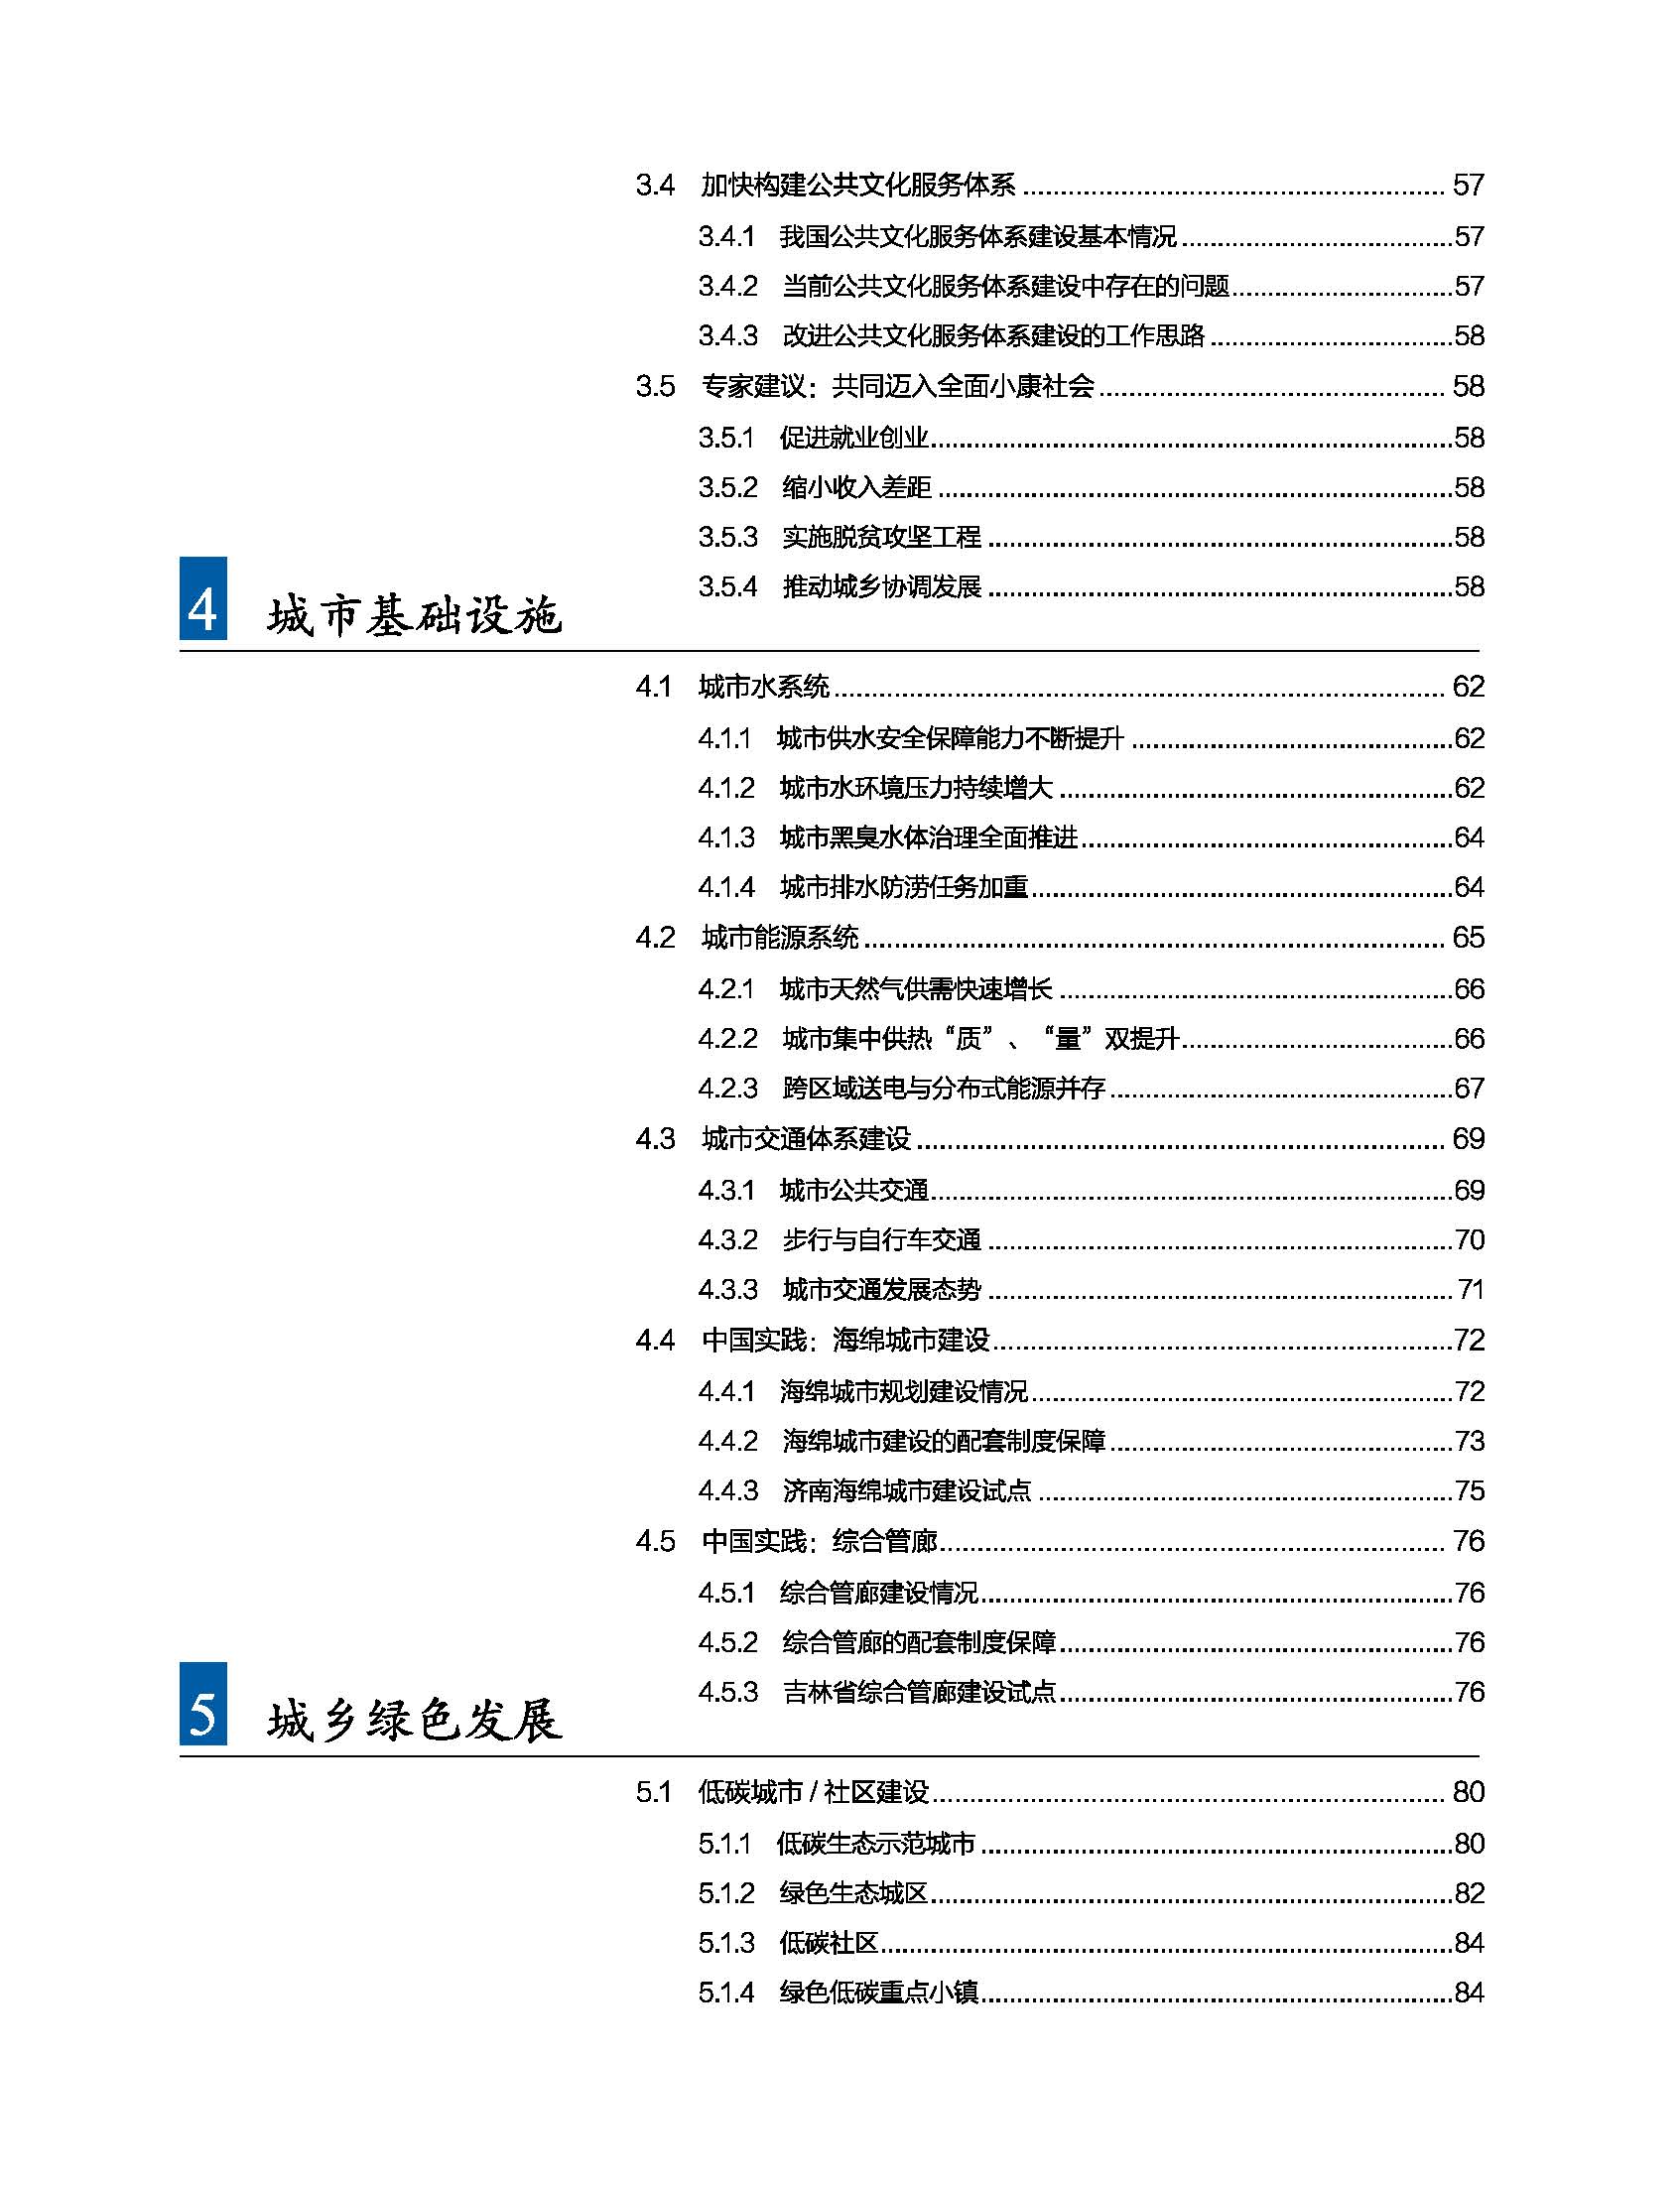 状况报告2016-2017中文 10.jpg